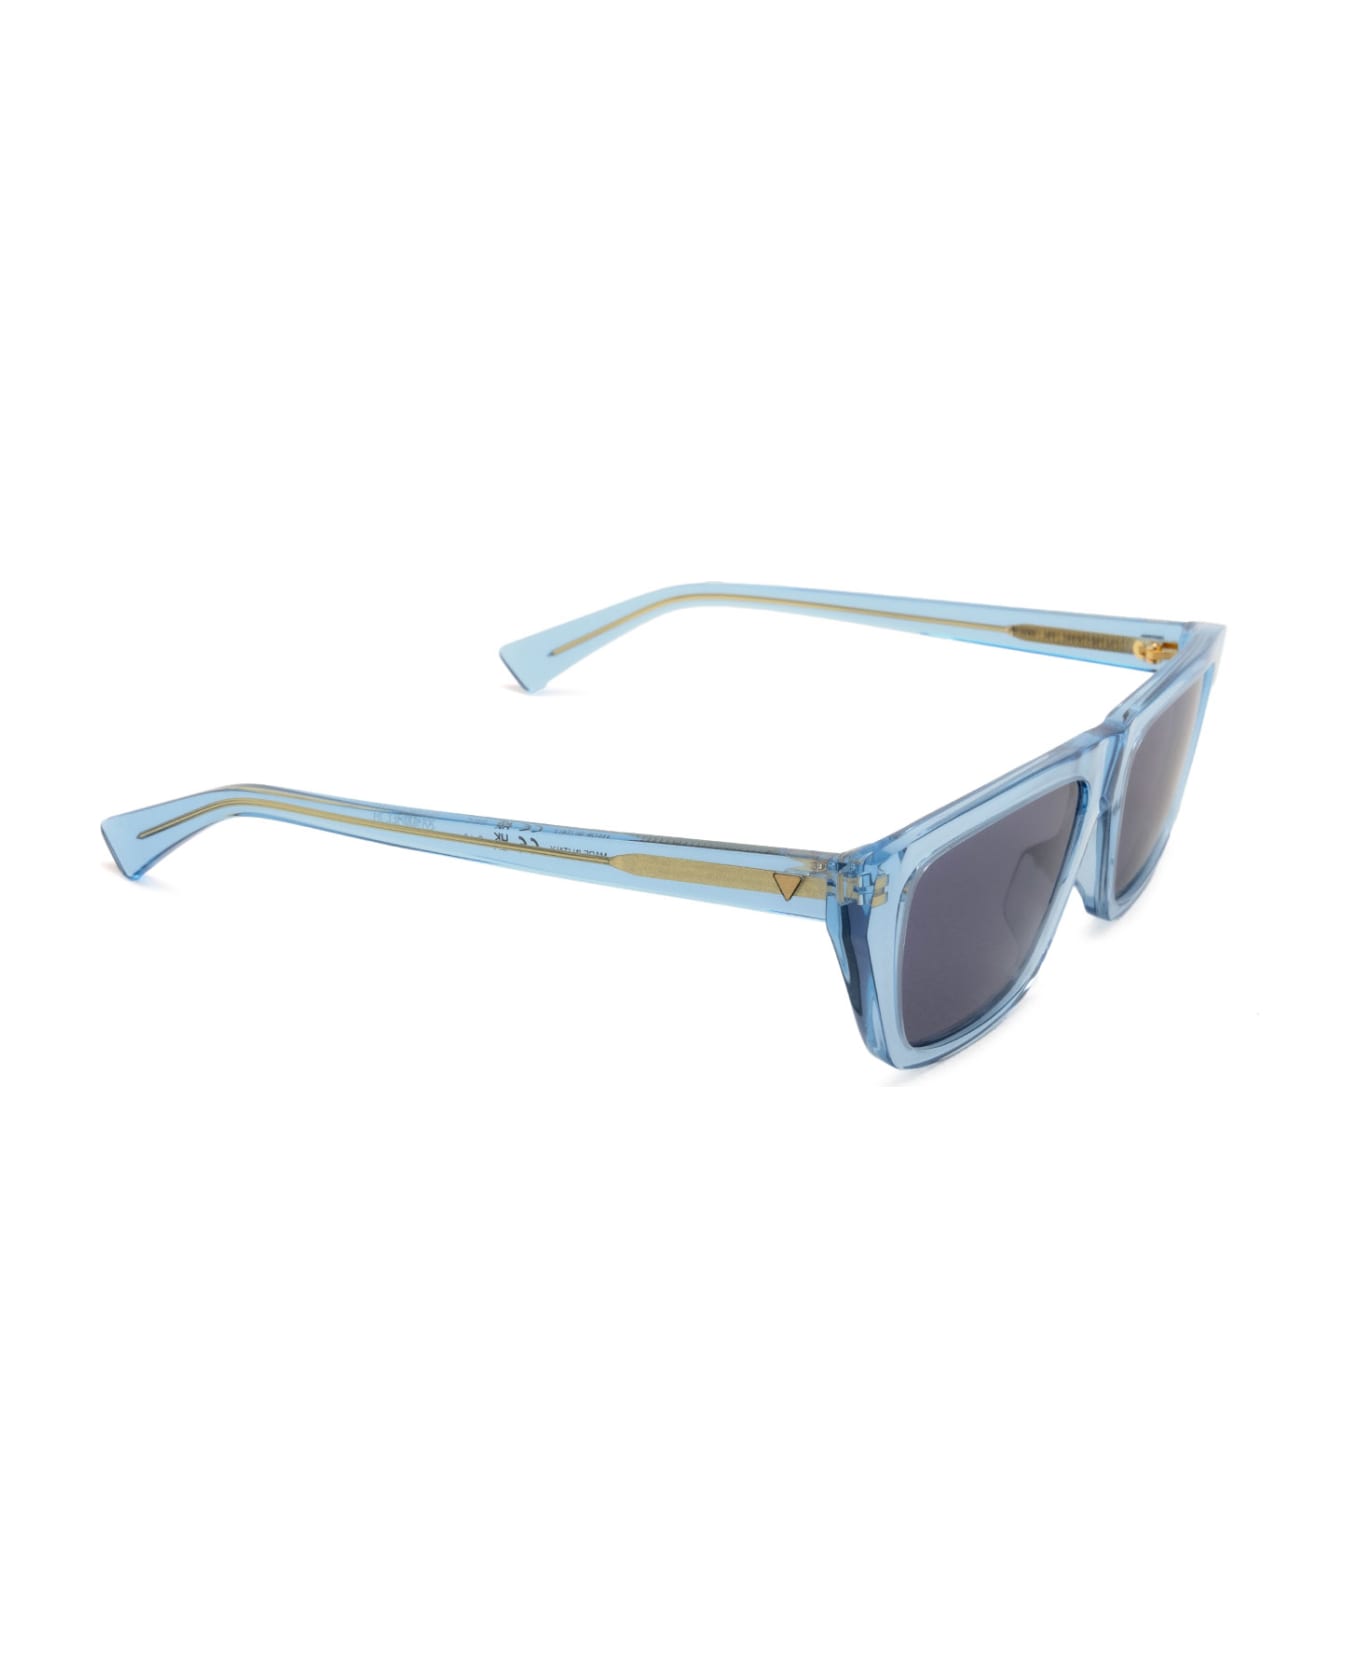 Bottega Veneta Eyewear Bv1291s Light Blue Sunglasses - Light Blue